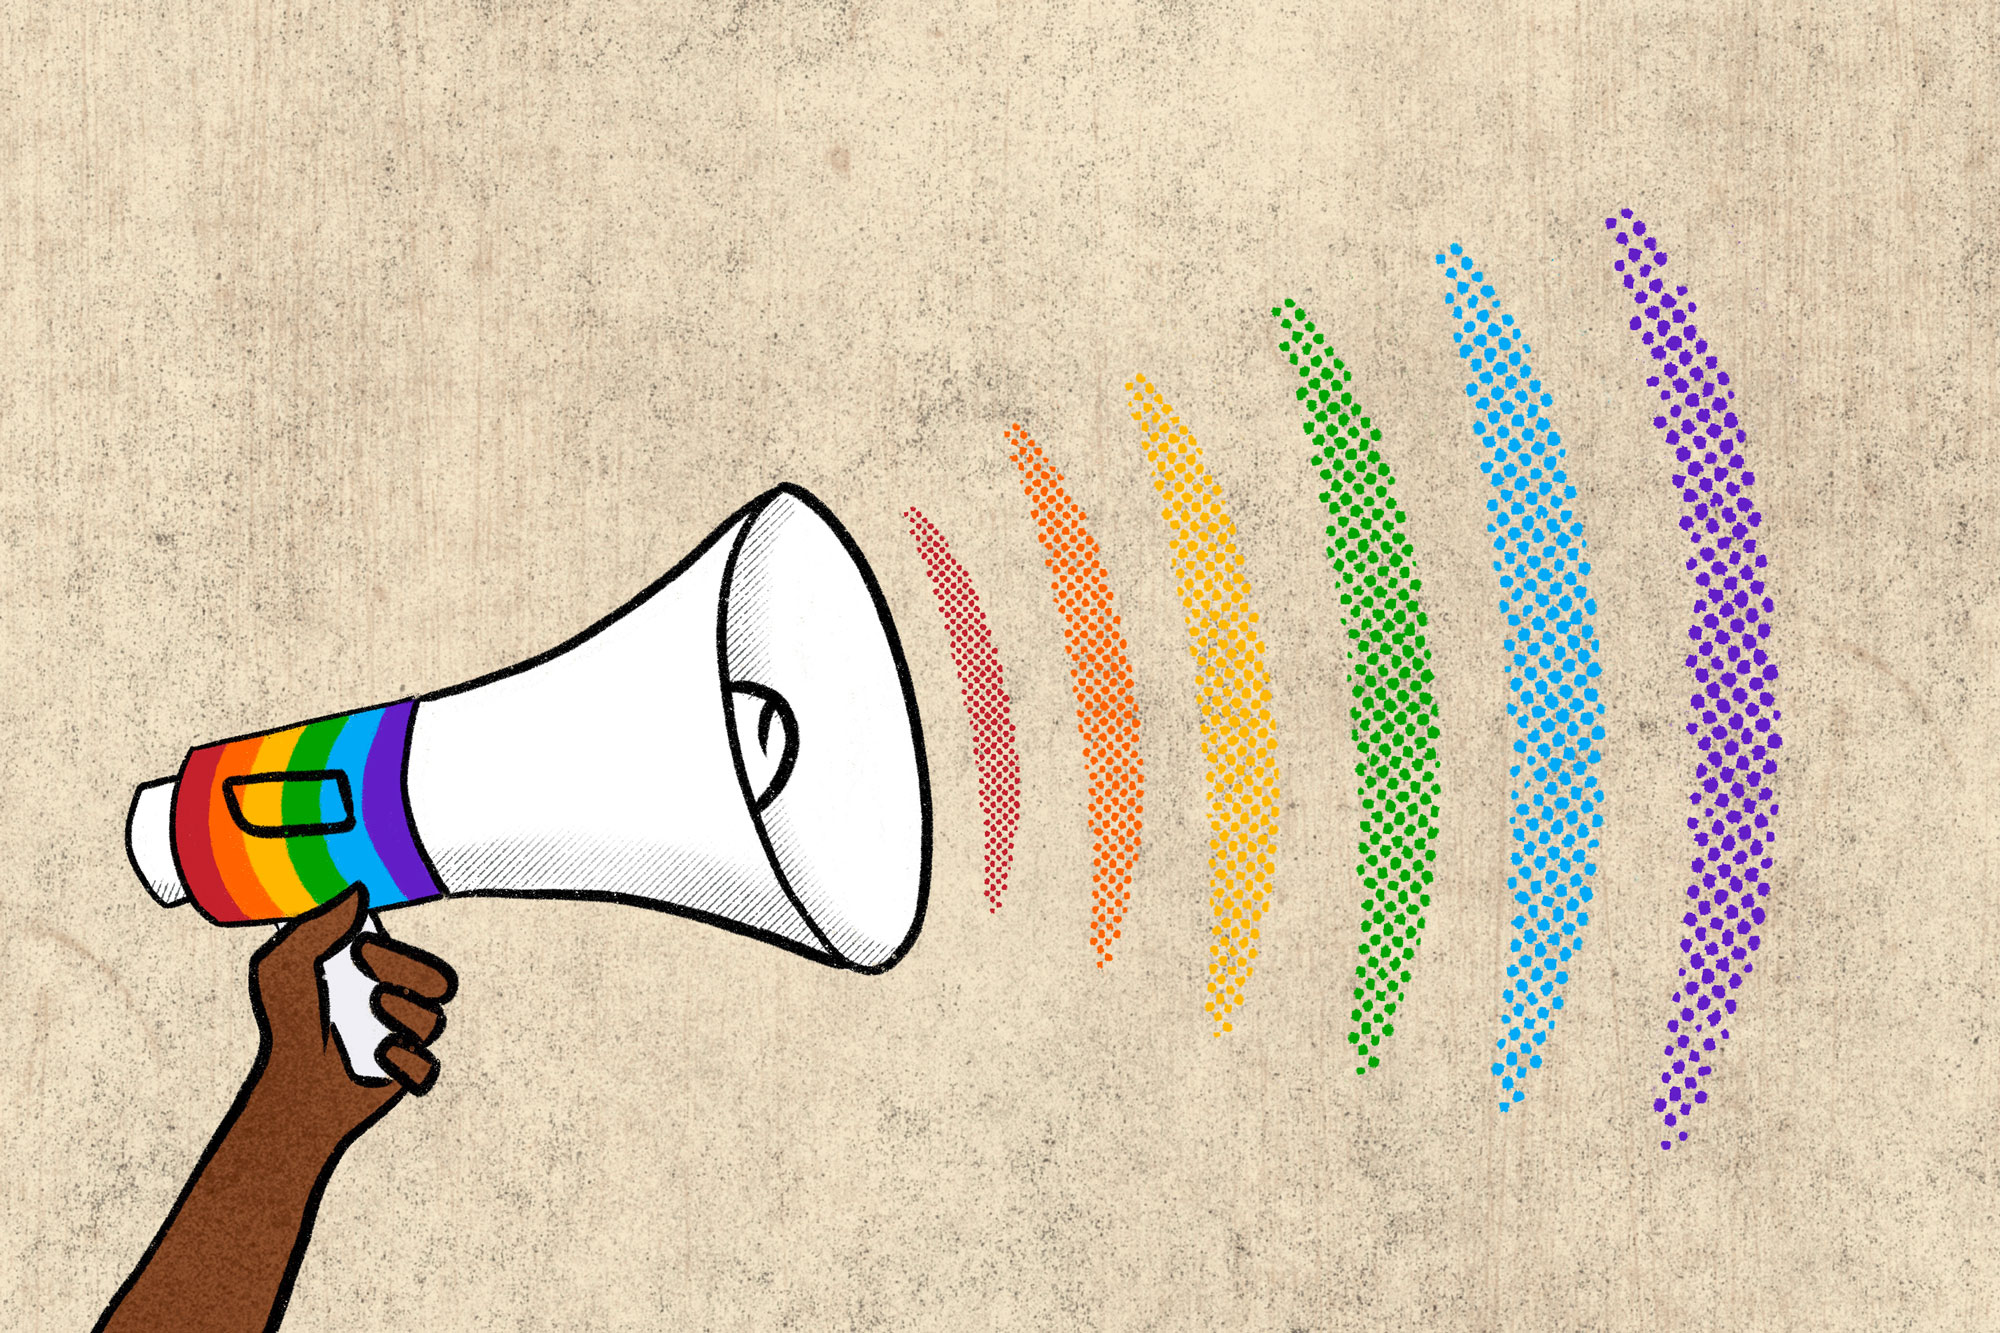 LGBTQ megaphone illustration